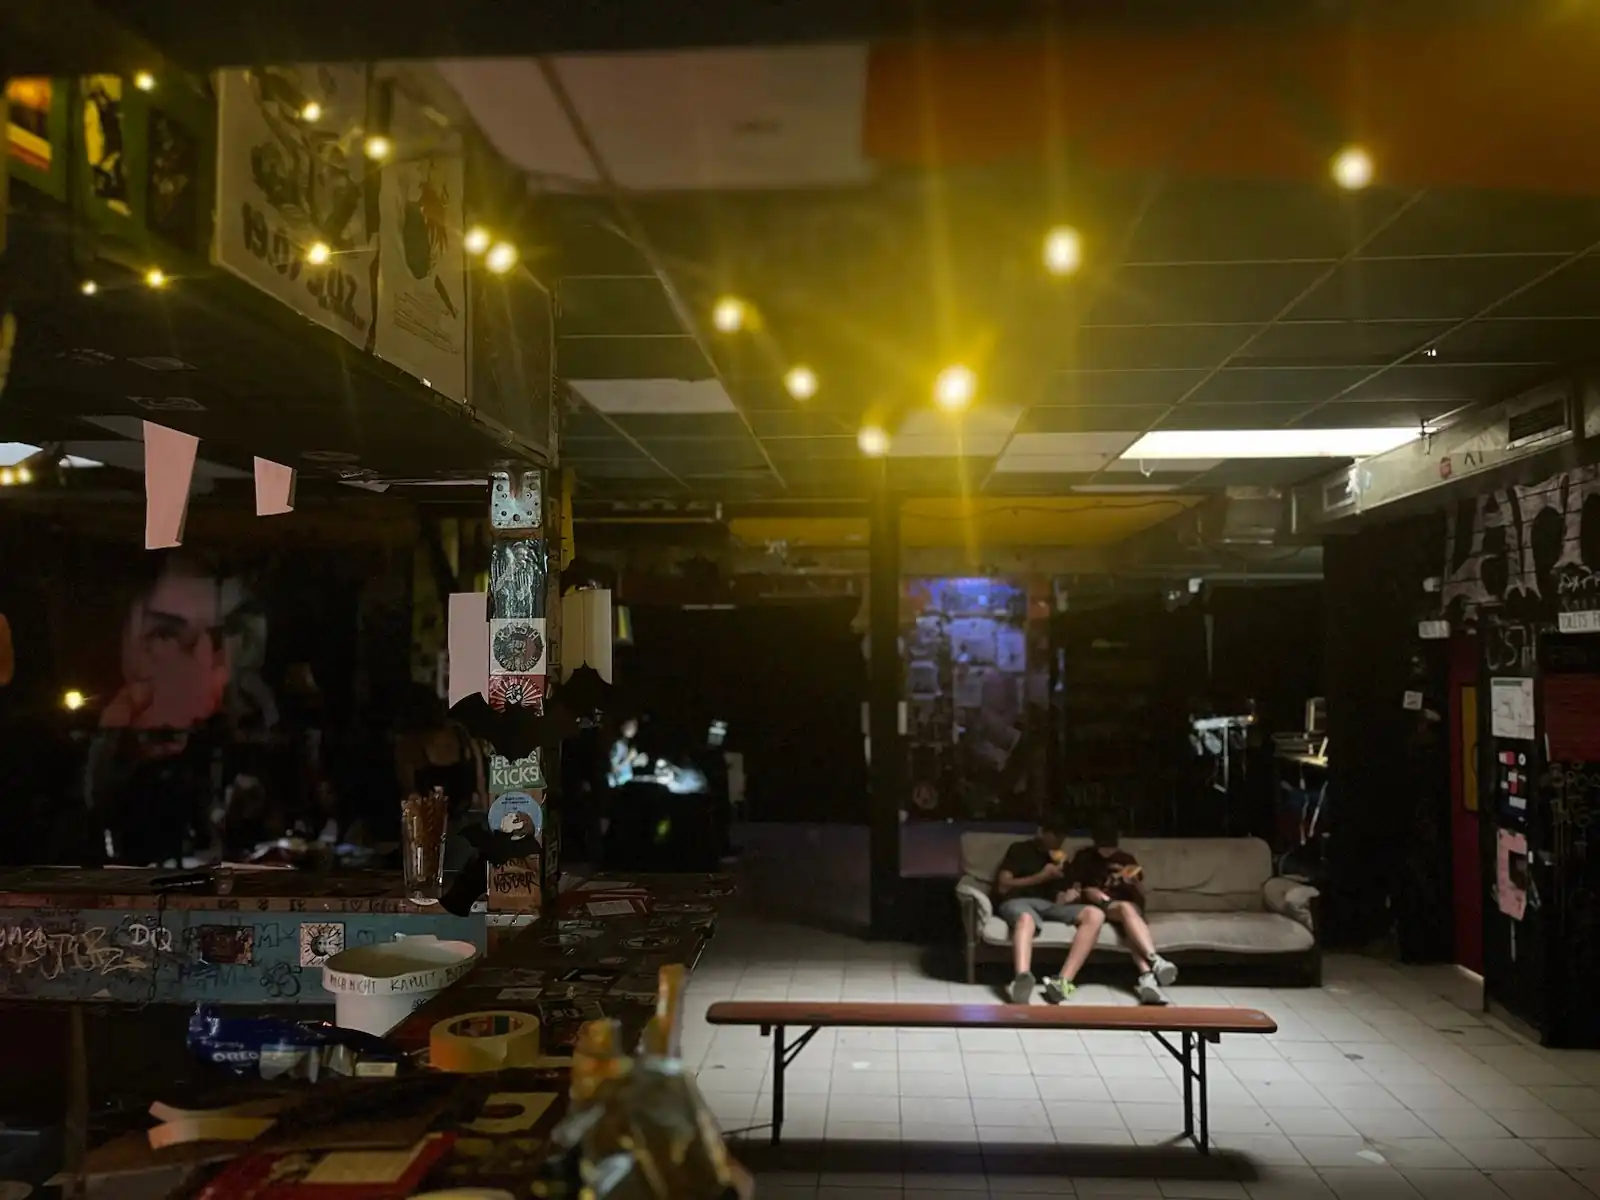 Blick von einer vollgestellten Bar auf einen gefließten Partyraum mit einer Bierbank in der Mitte. Auf einer Couch im Hintergrund sitzen zwei Jugendliche. Im oberen Bildrittel hängt eine Lichterkette.